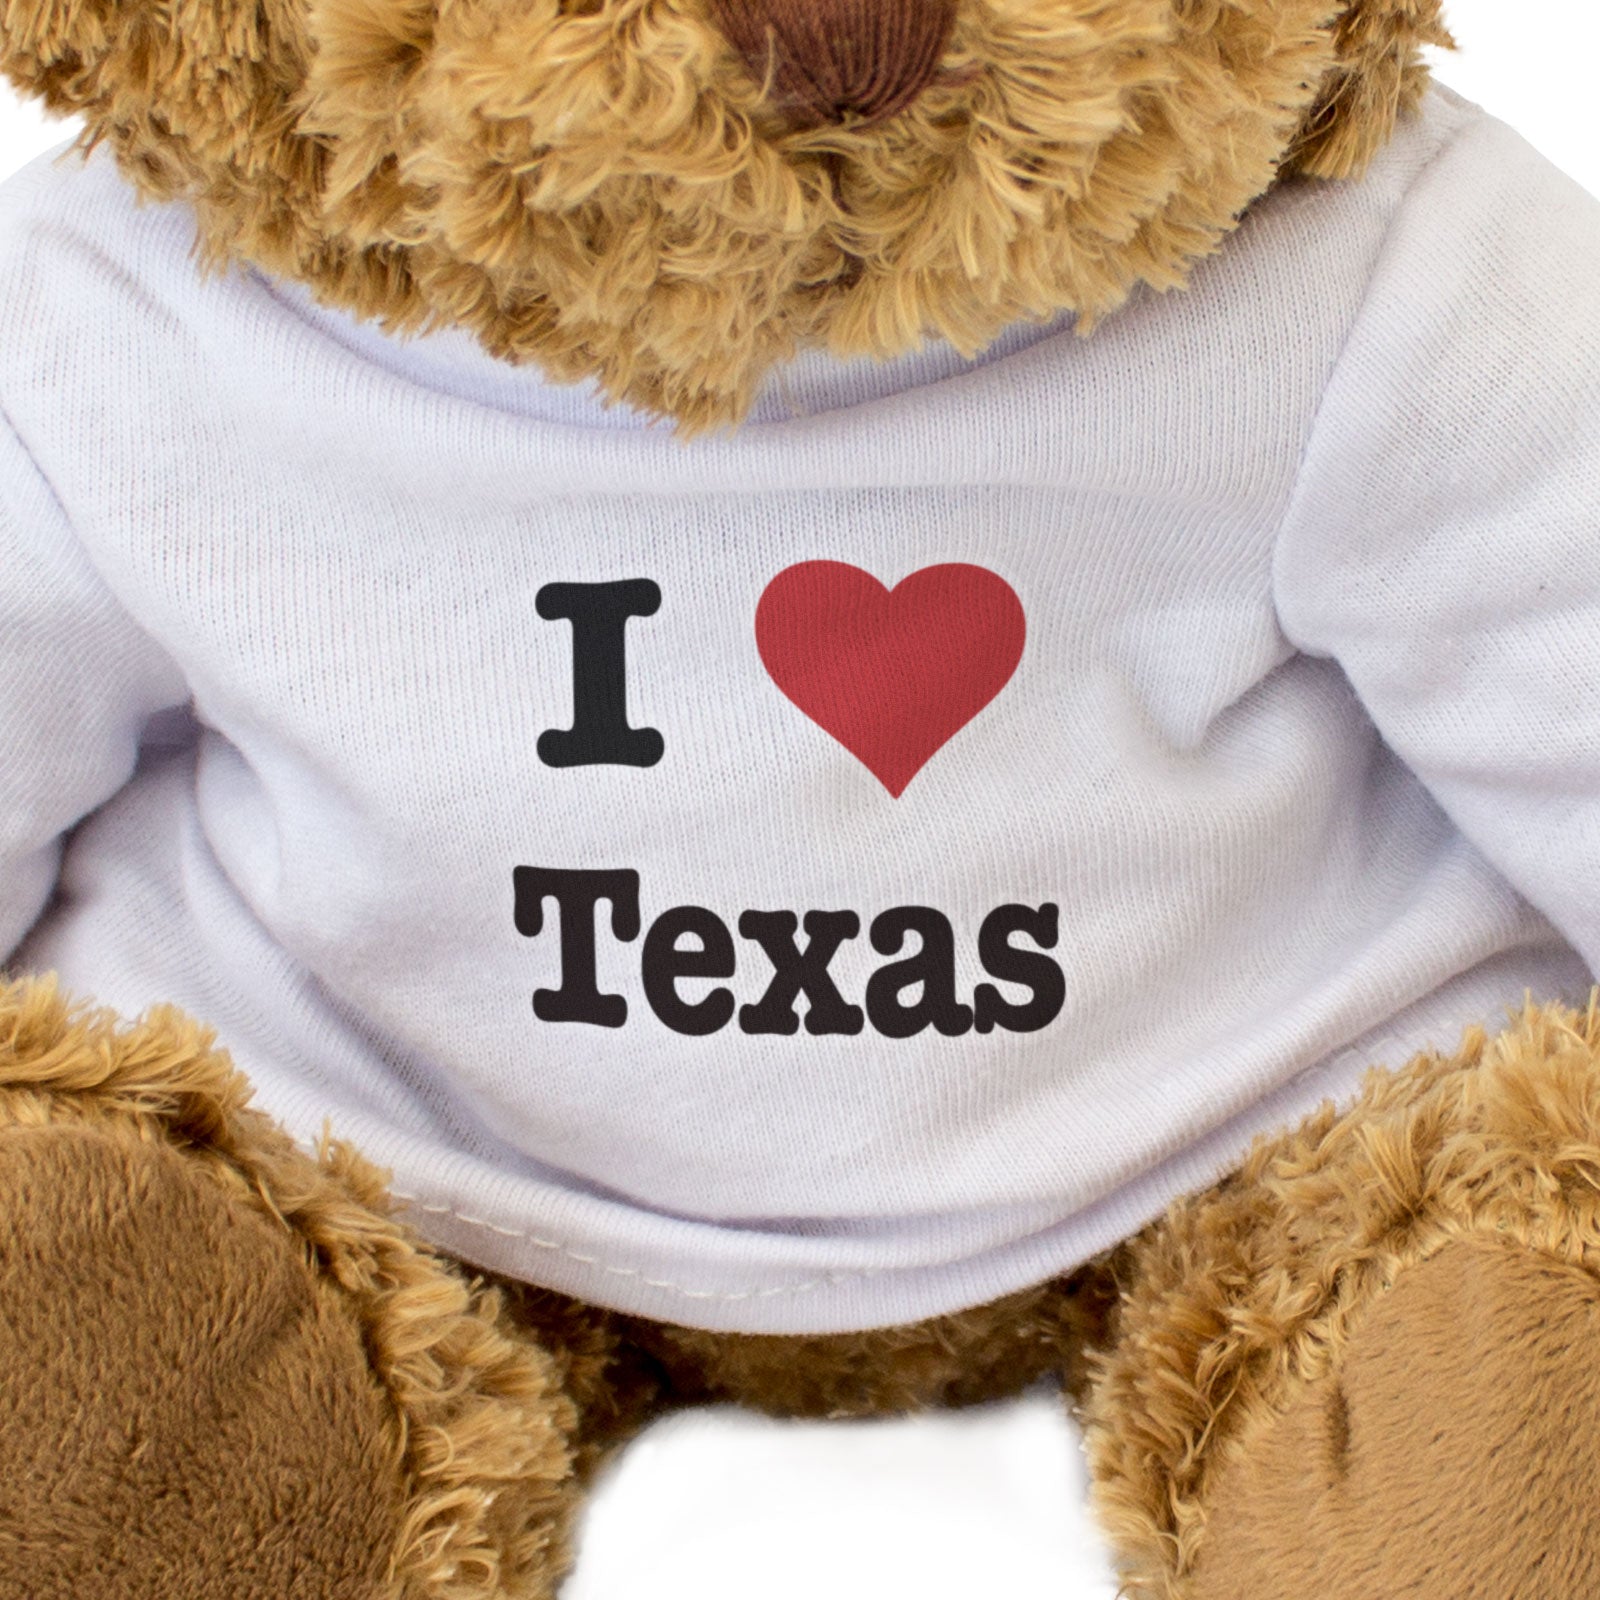 I Love Texas - Teddy Bear